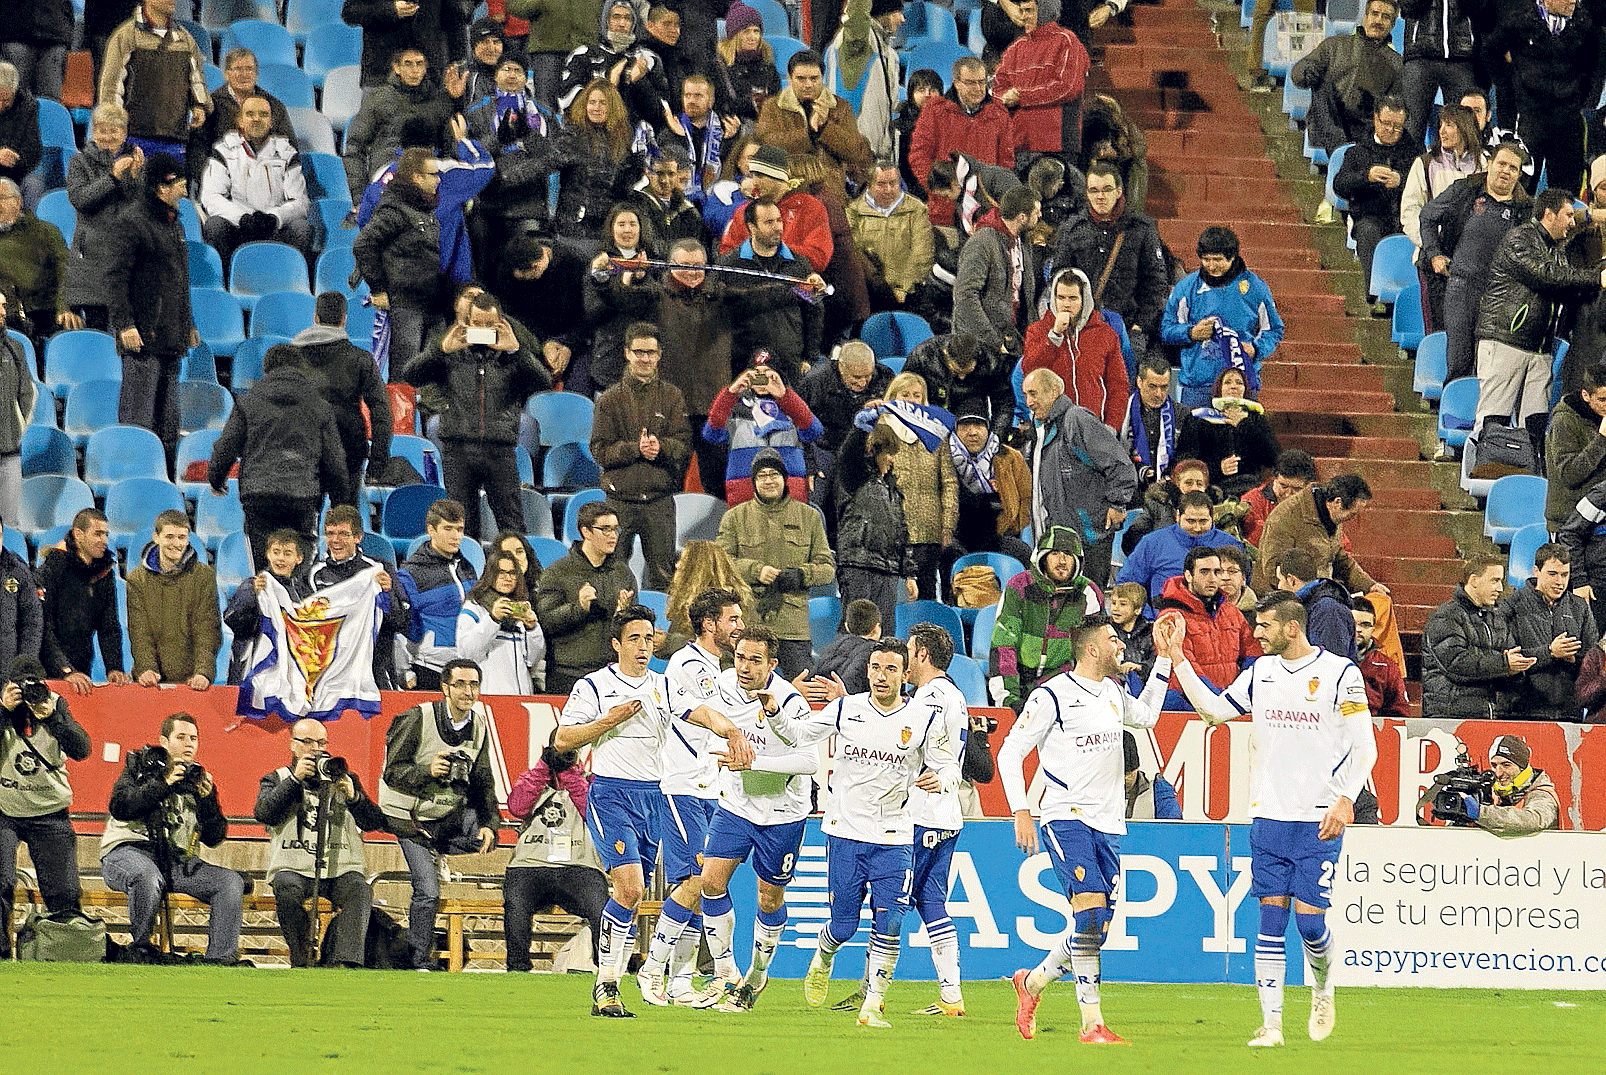 Los jugadores del Real Zaragoza celebran la consecución del 2-1, anotado por Borja Bastón de penalti